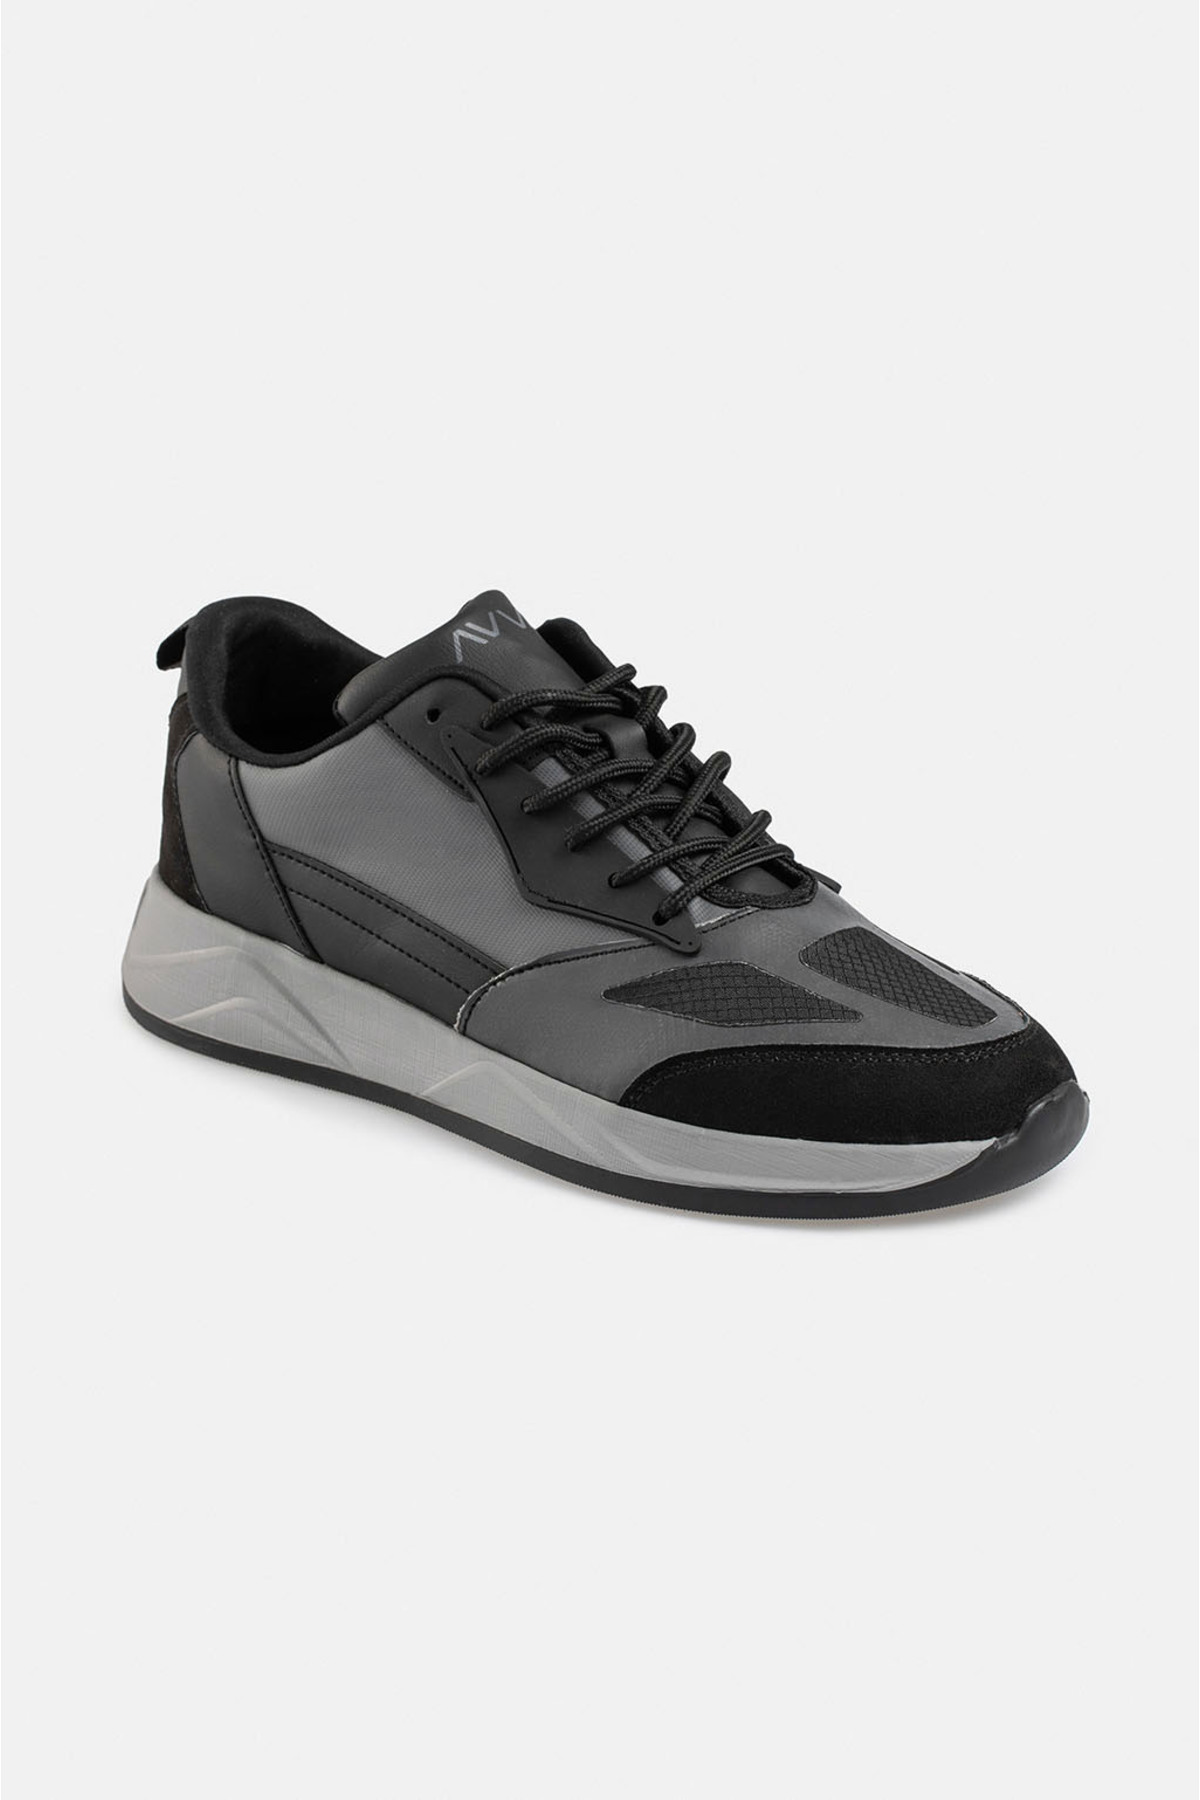 Avva Men's Black Suede Look Flexible Sole Sneaker Shoes